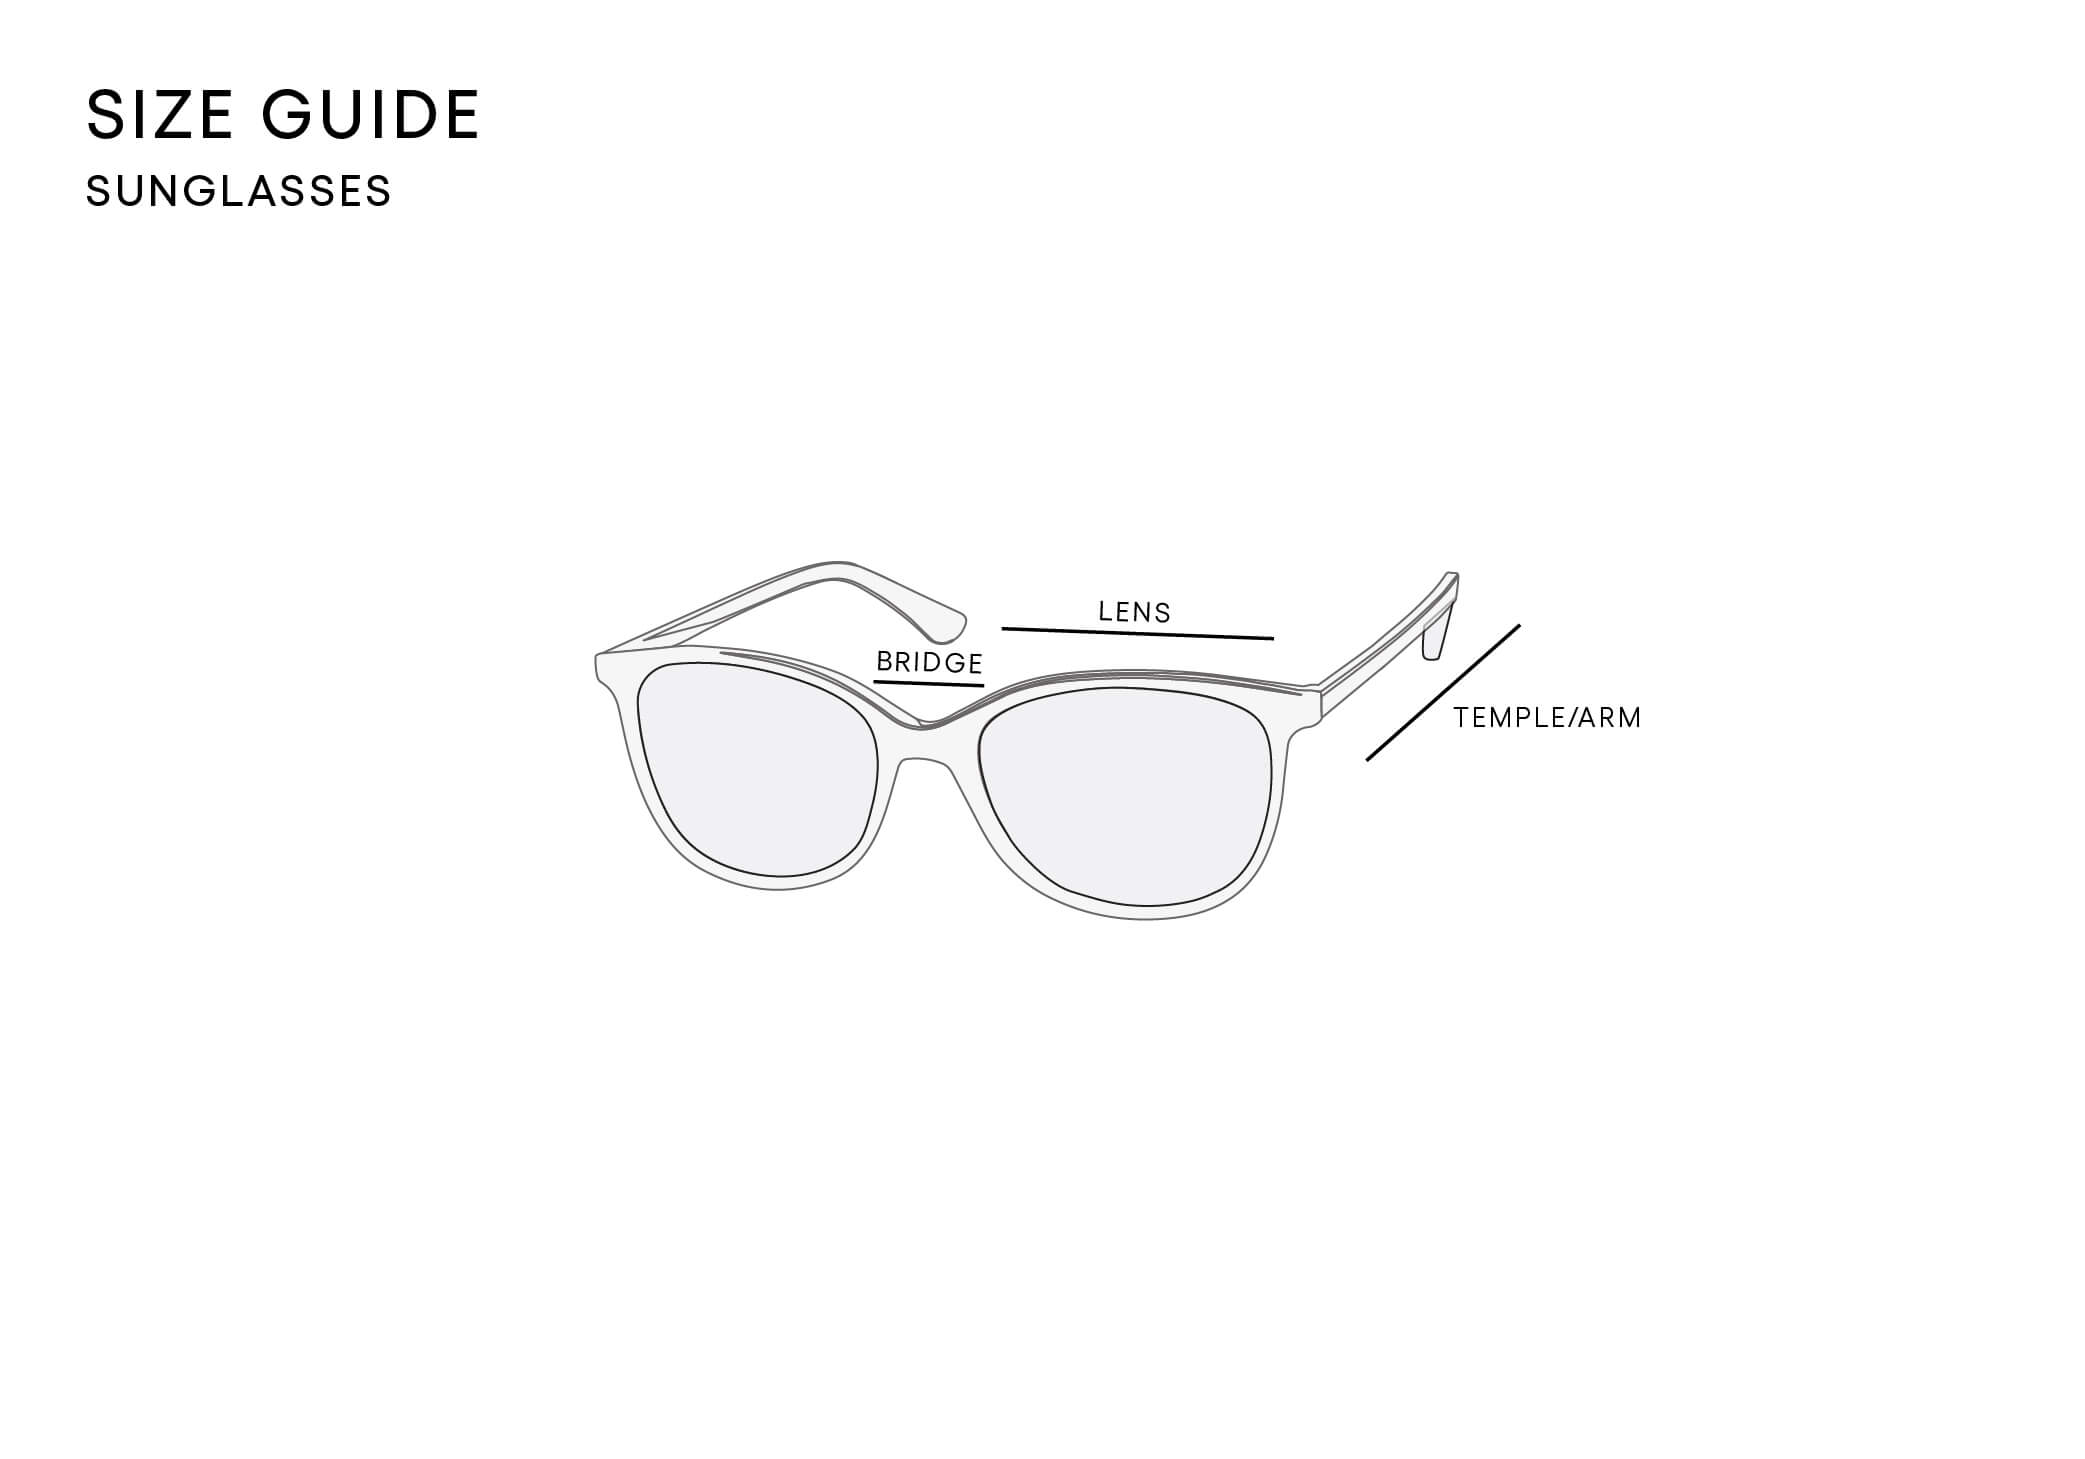 Sunglasses size chart